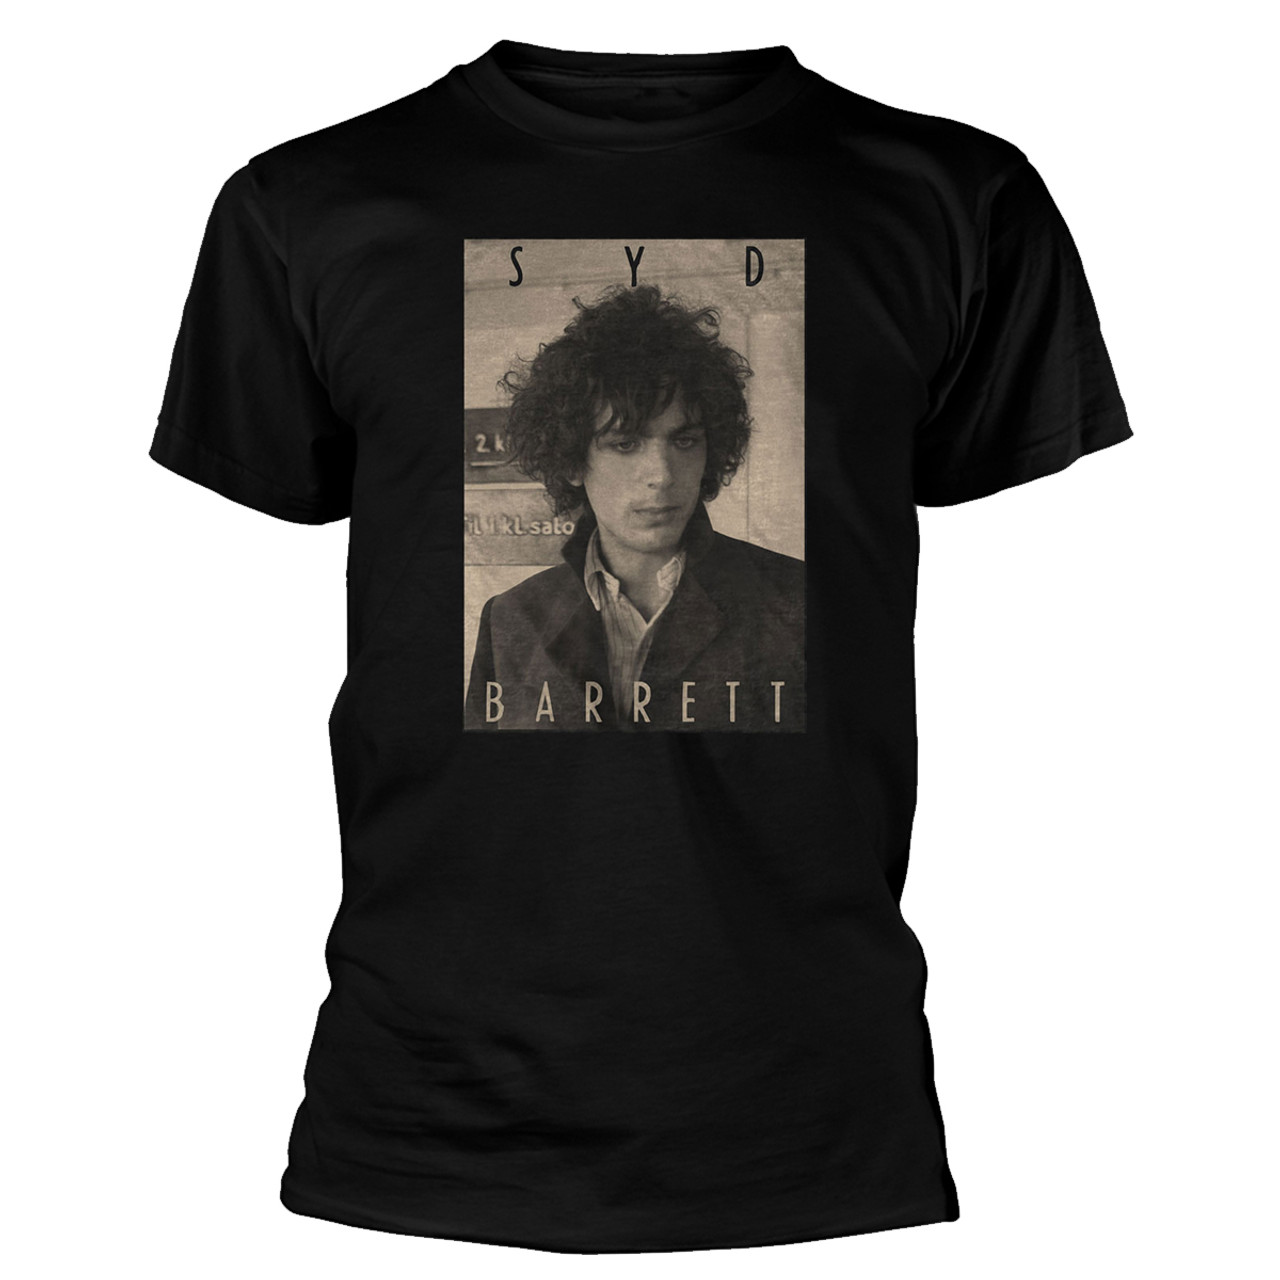 (シド・バレット) Syd Barrett オフィシャル商品 ユニセックス Sepia Tシャツ コットン 半袖 トップス 【海外通販】